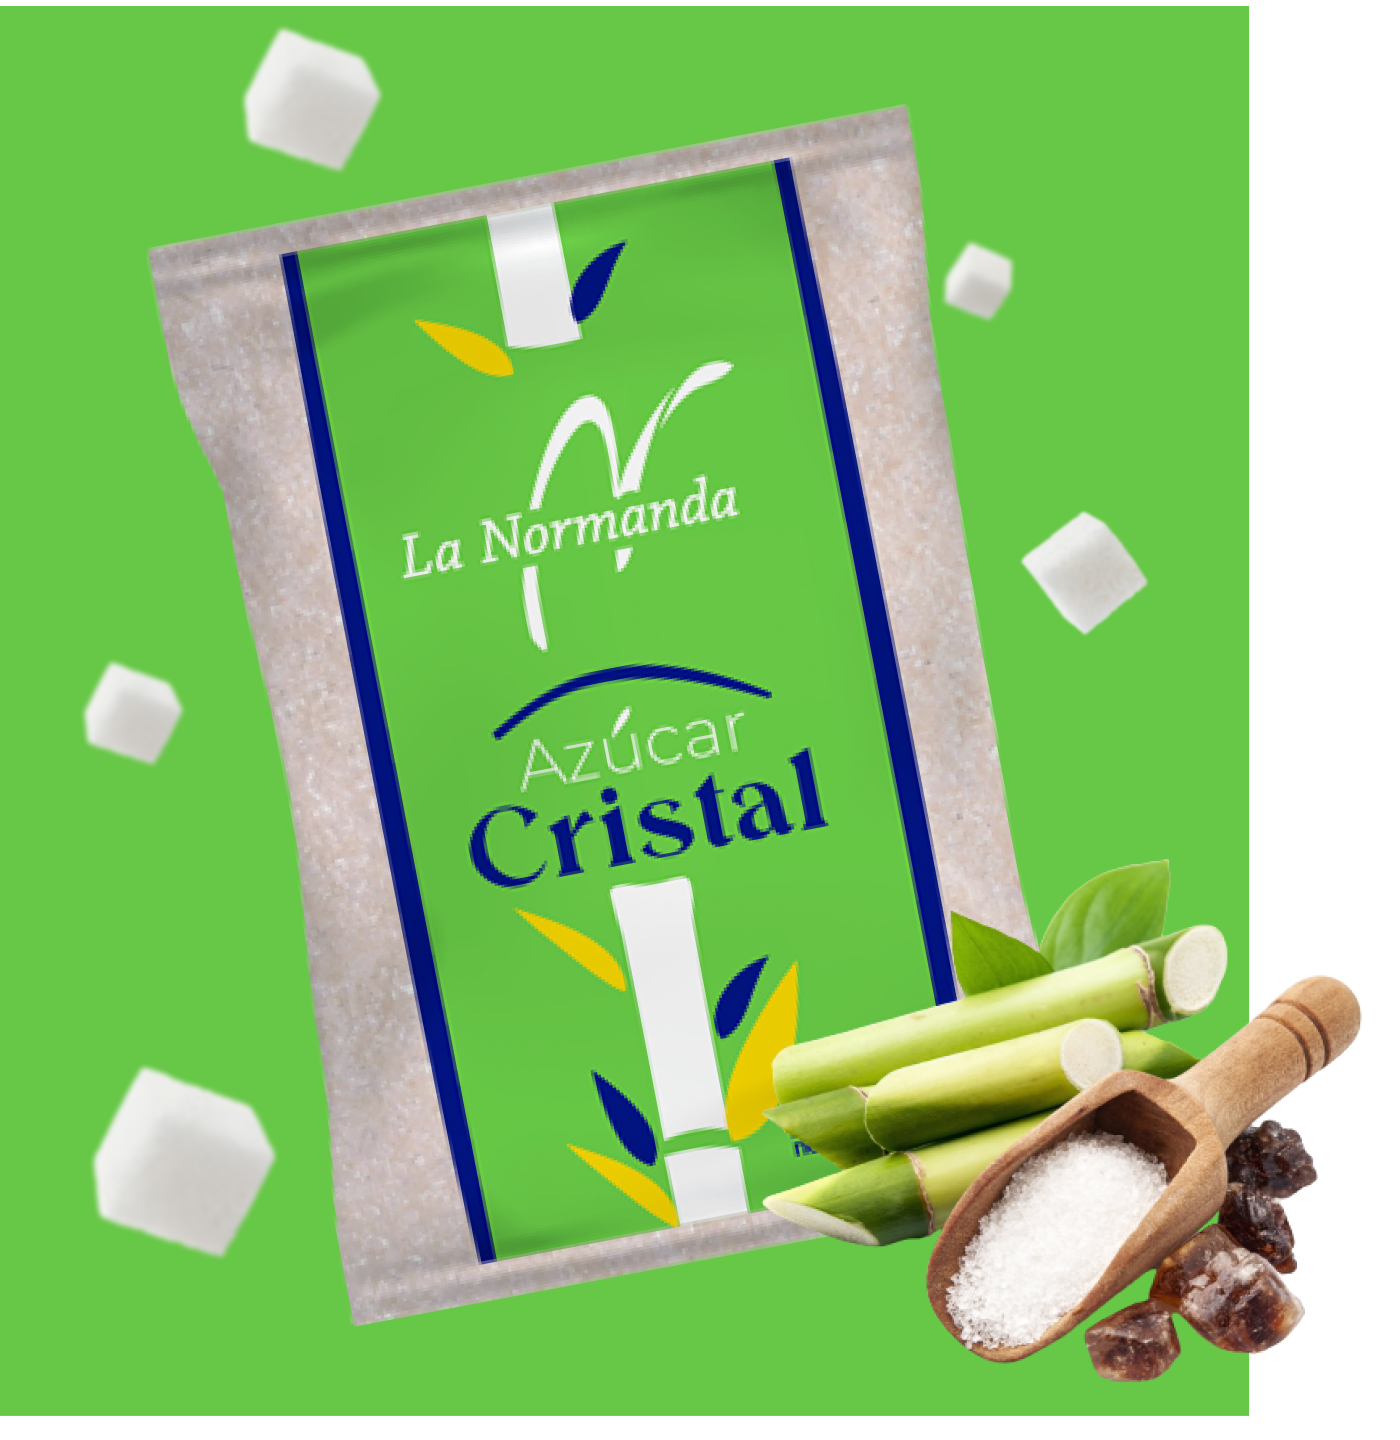 Crystal sugar